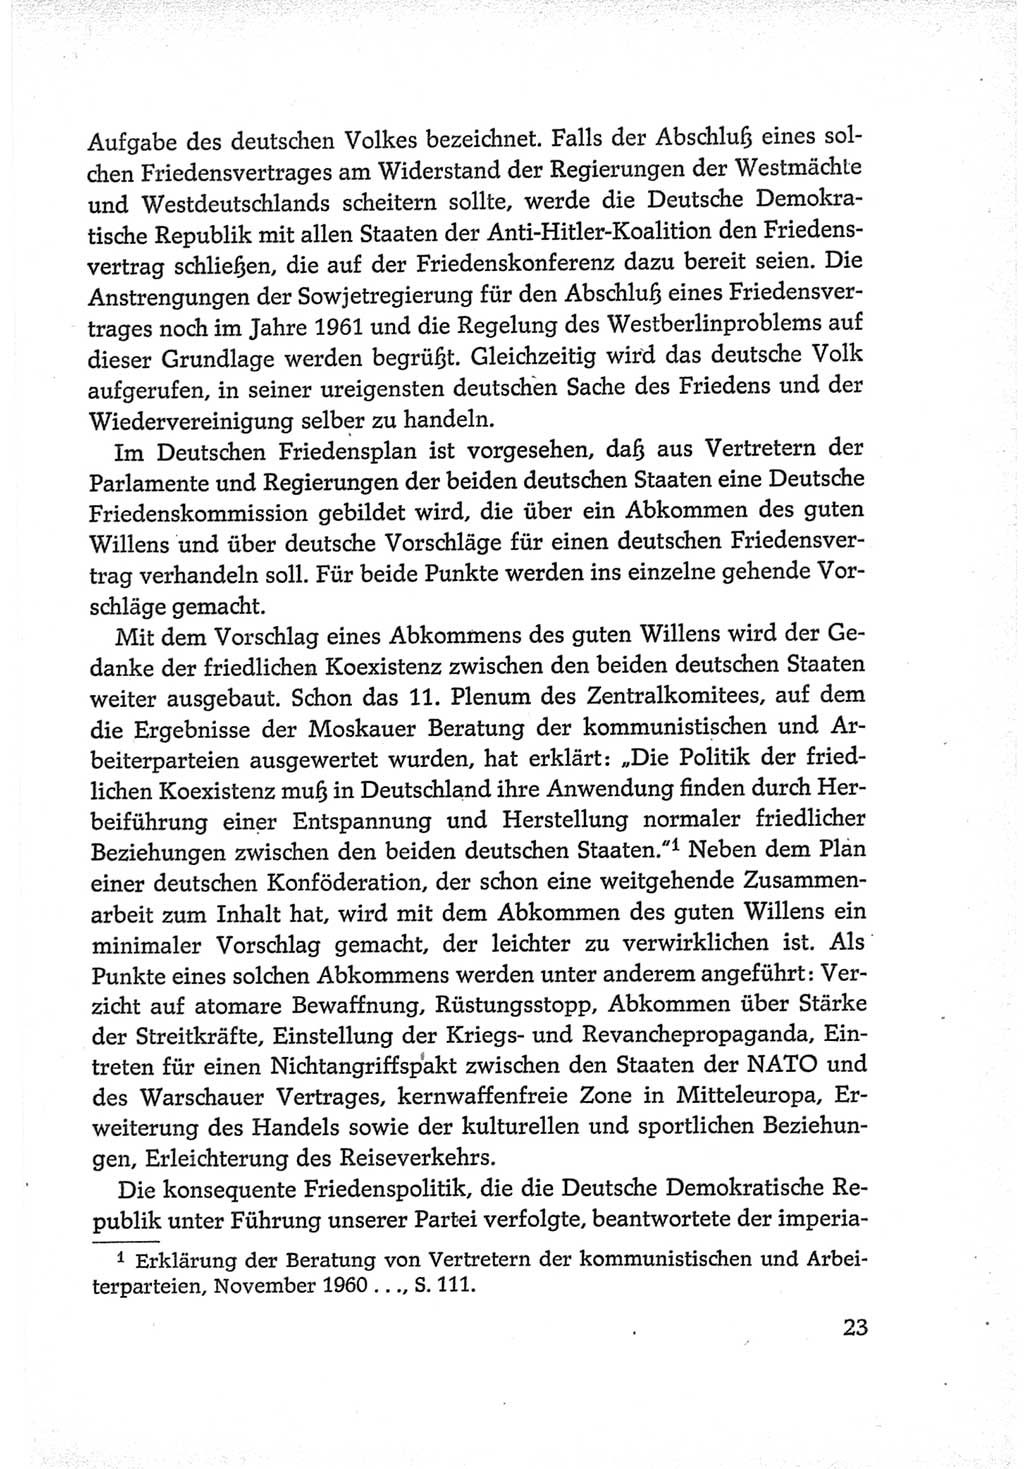 Protokoll der Verhandlungen des Ⅵ. Parteitages der Sozialistischen Einheitspartei Deutschlands (SED) [Deutsche Demokratische Republik (DDR)] 1963, Band Ⅳ, Seite 23 (Prot. Verh. Ⅵ. PT SED DDR 1963, Bd. Ⅳ, S. 23)